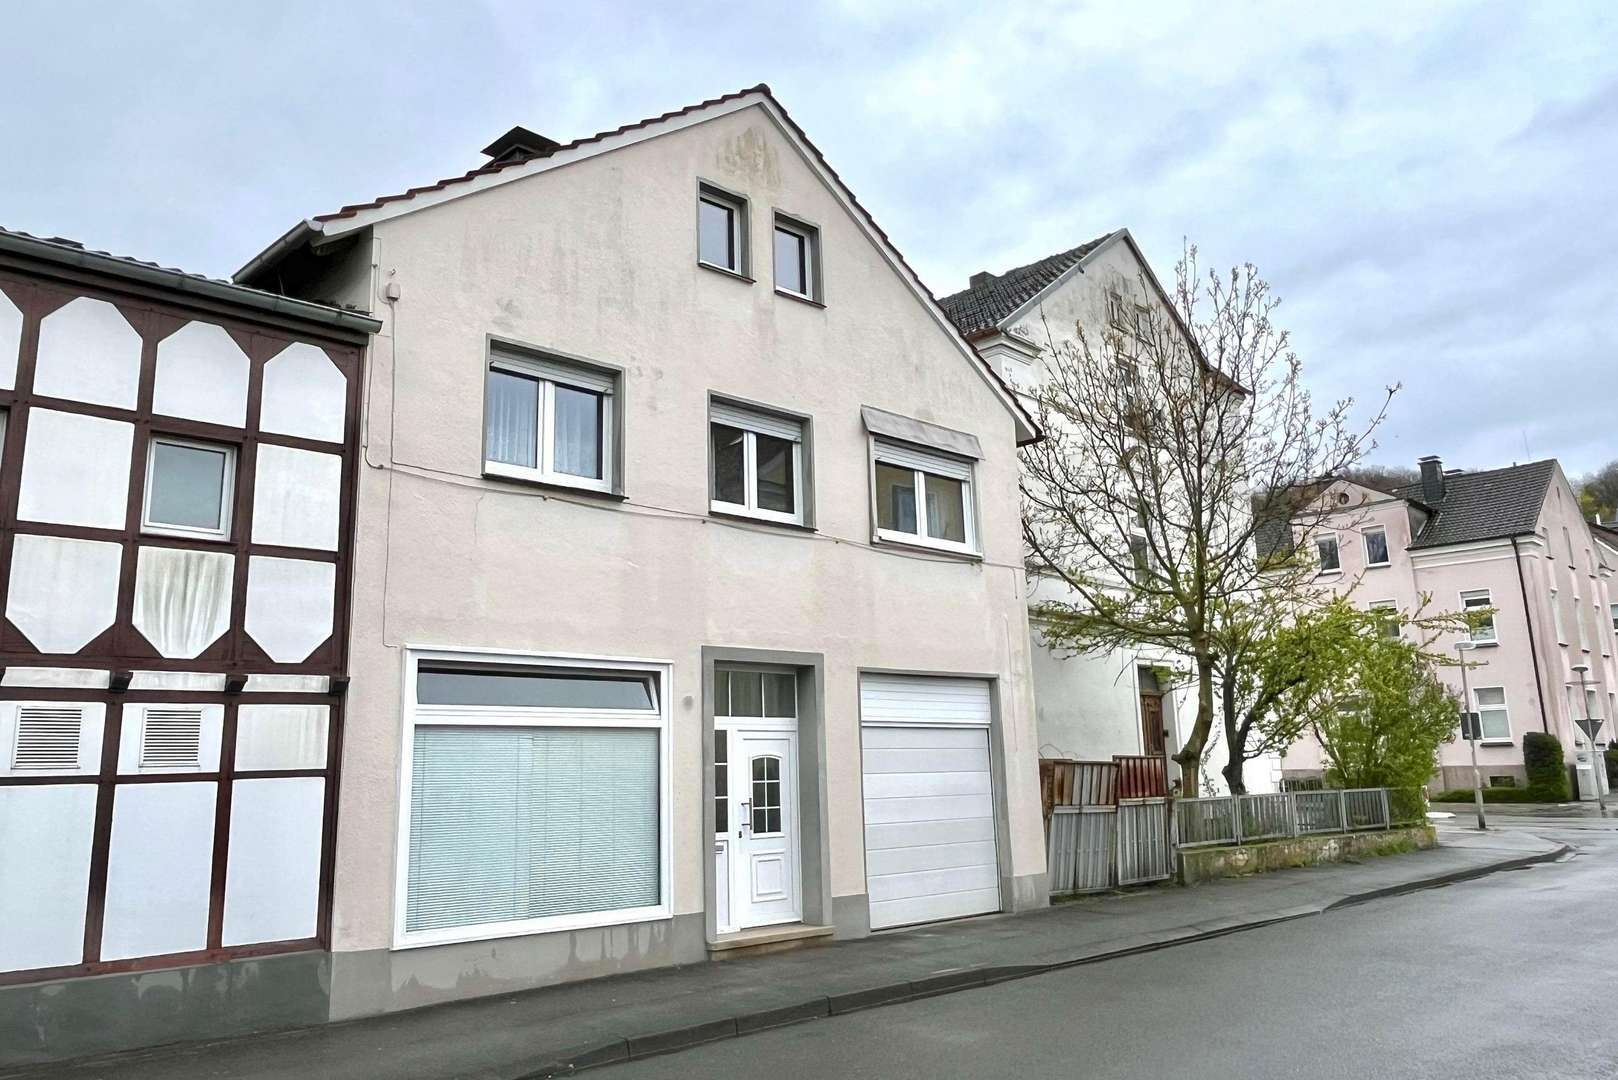 IMG_7091 - Mehrfamilienhaus in 59821 Arnsberg mit 155m² kaufen